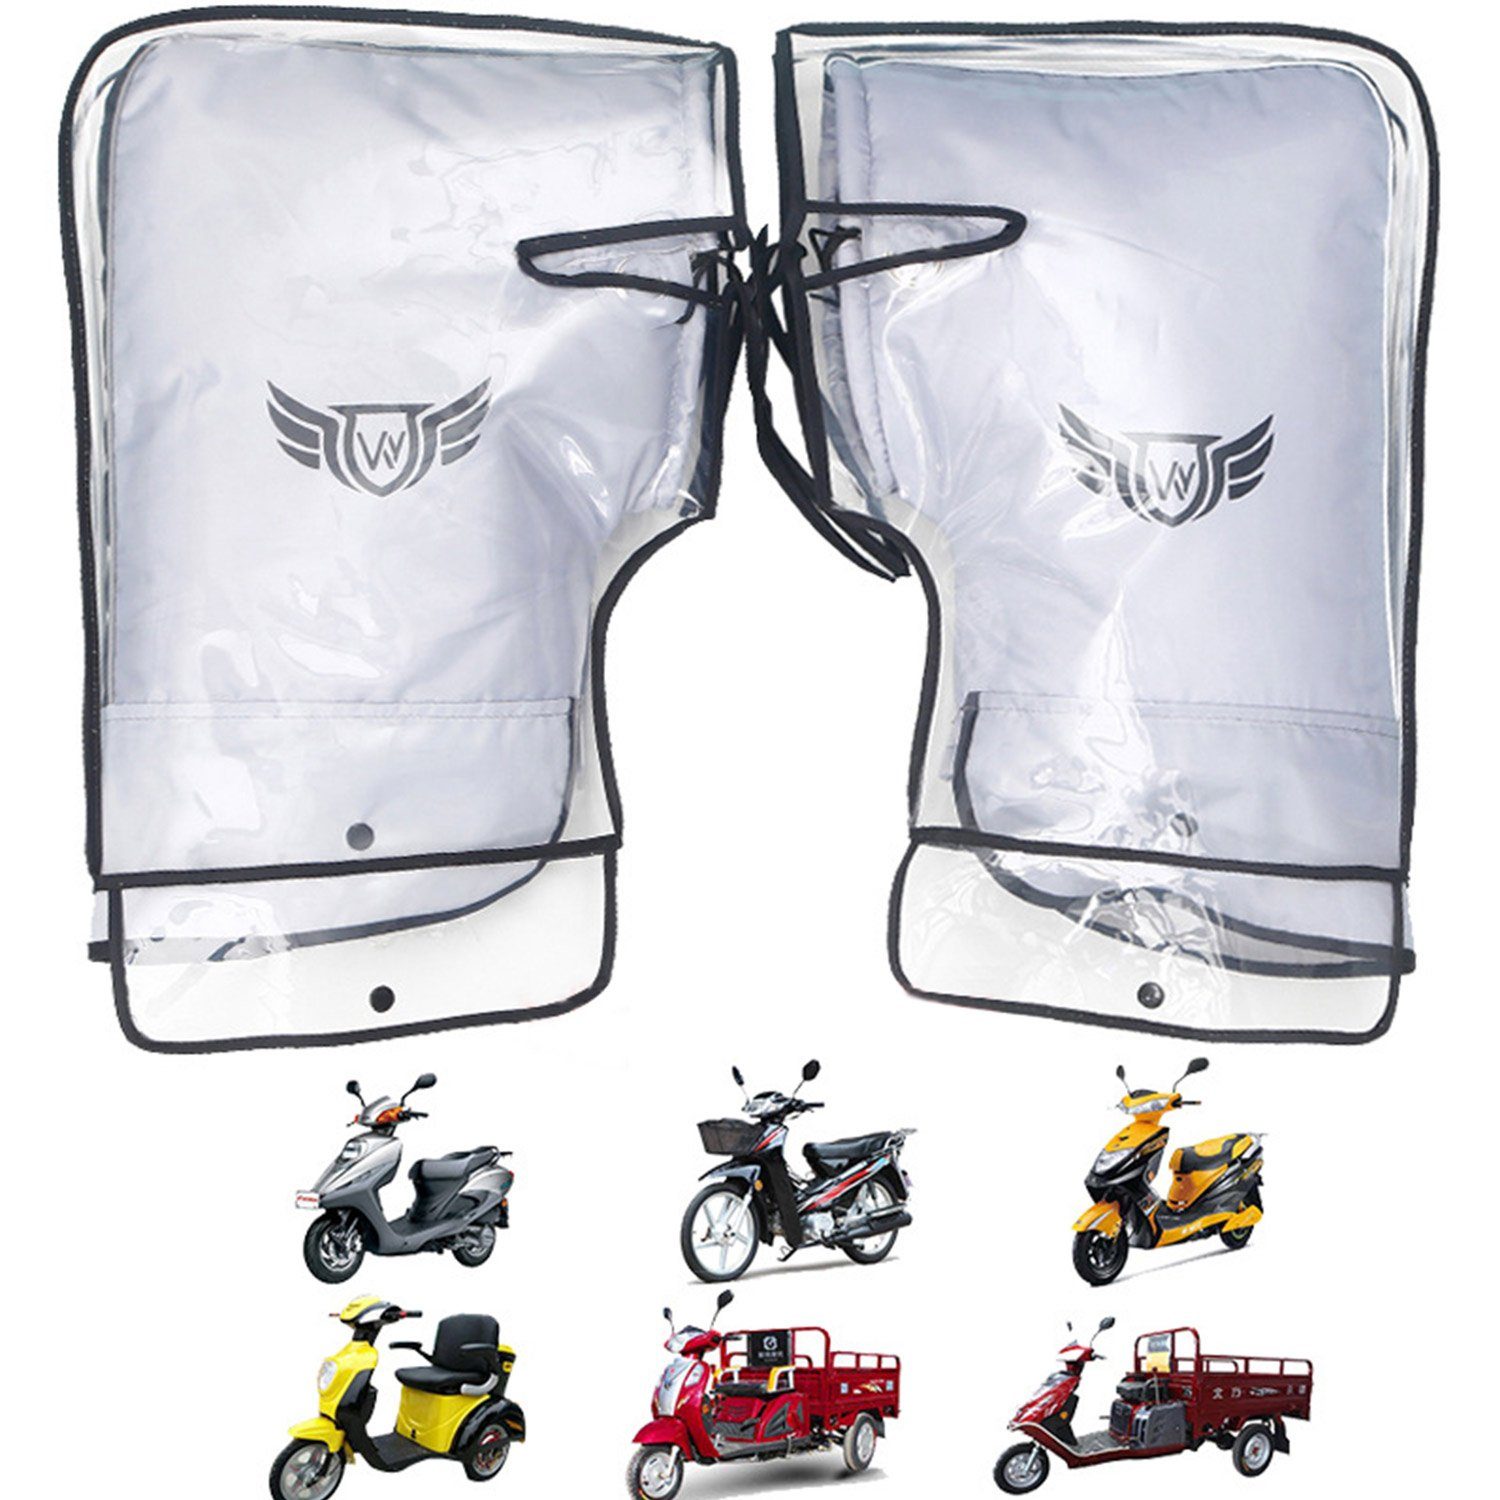 Lenkerhandschuhe Schale MAGICSHE große winddicht Mund+wasserdichte Fahrzeugausrüstung Fahrradhandschuhe Silbergraue